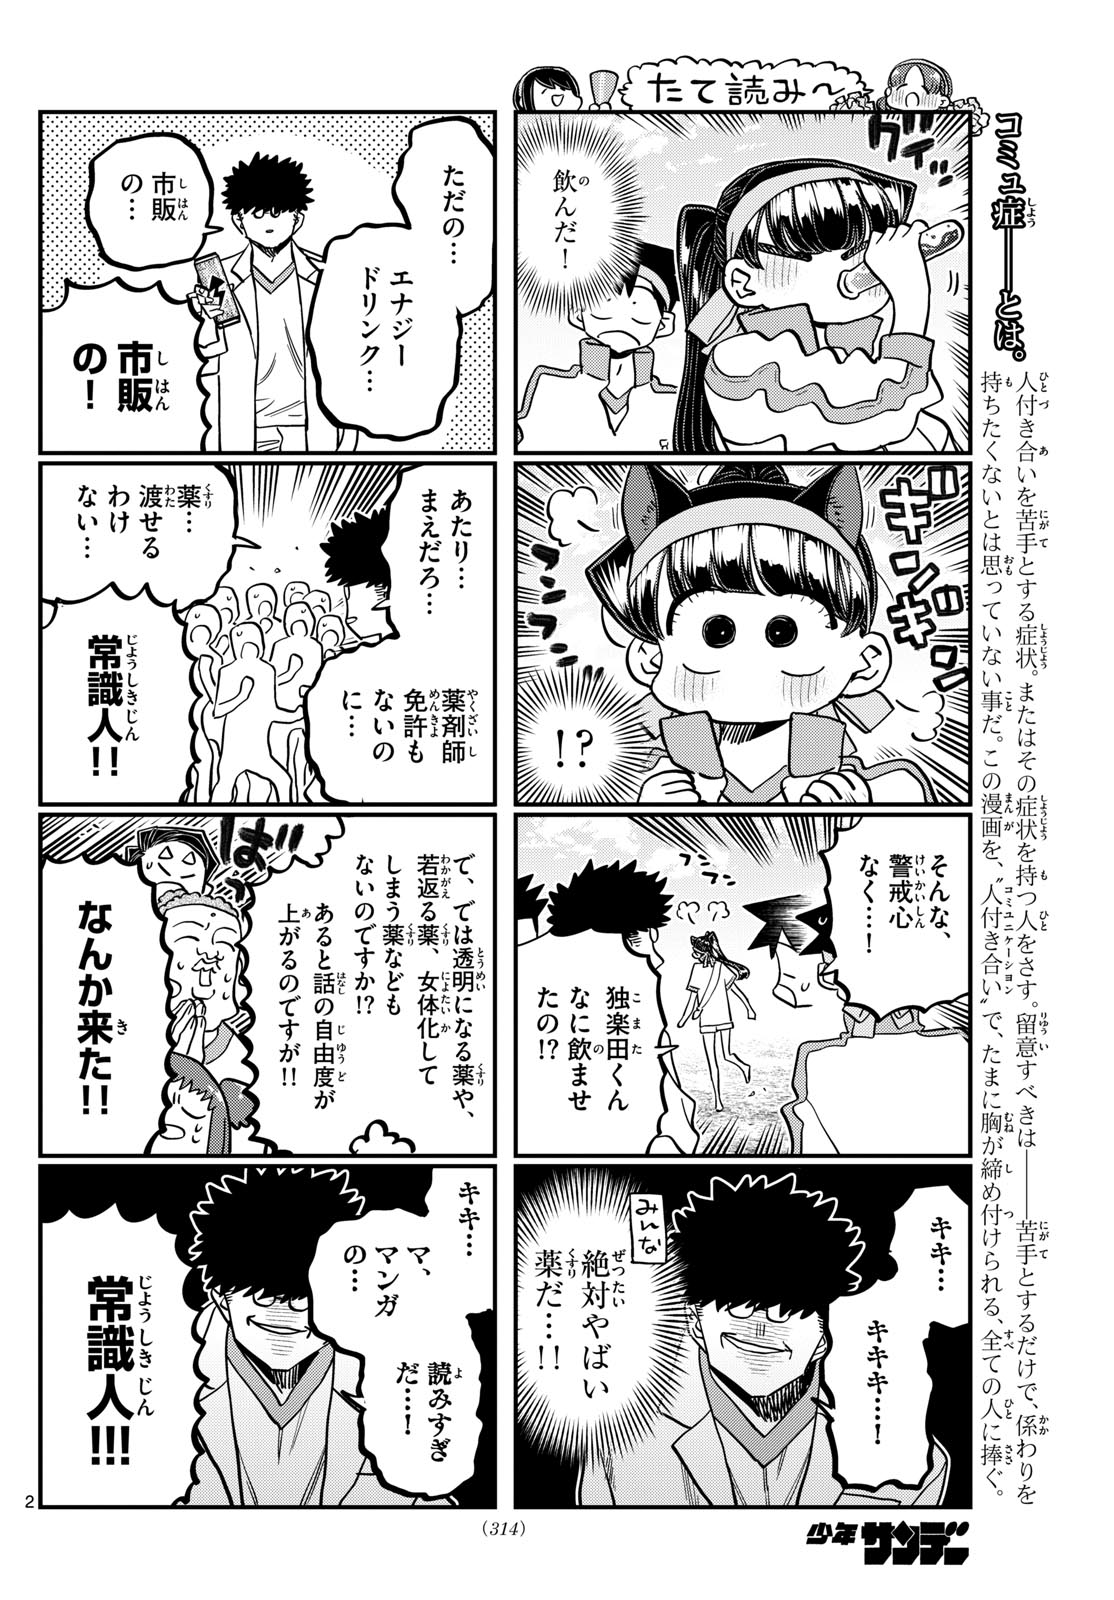 Komi-san wa Komyushou Desu - Chapter 431 - Page 2